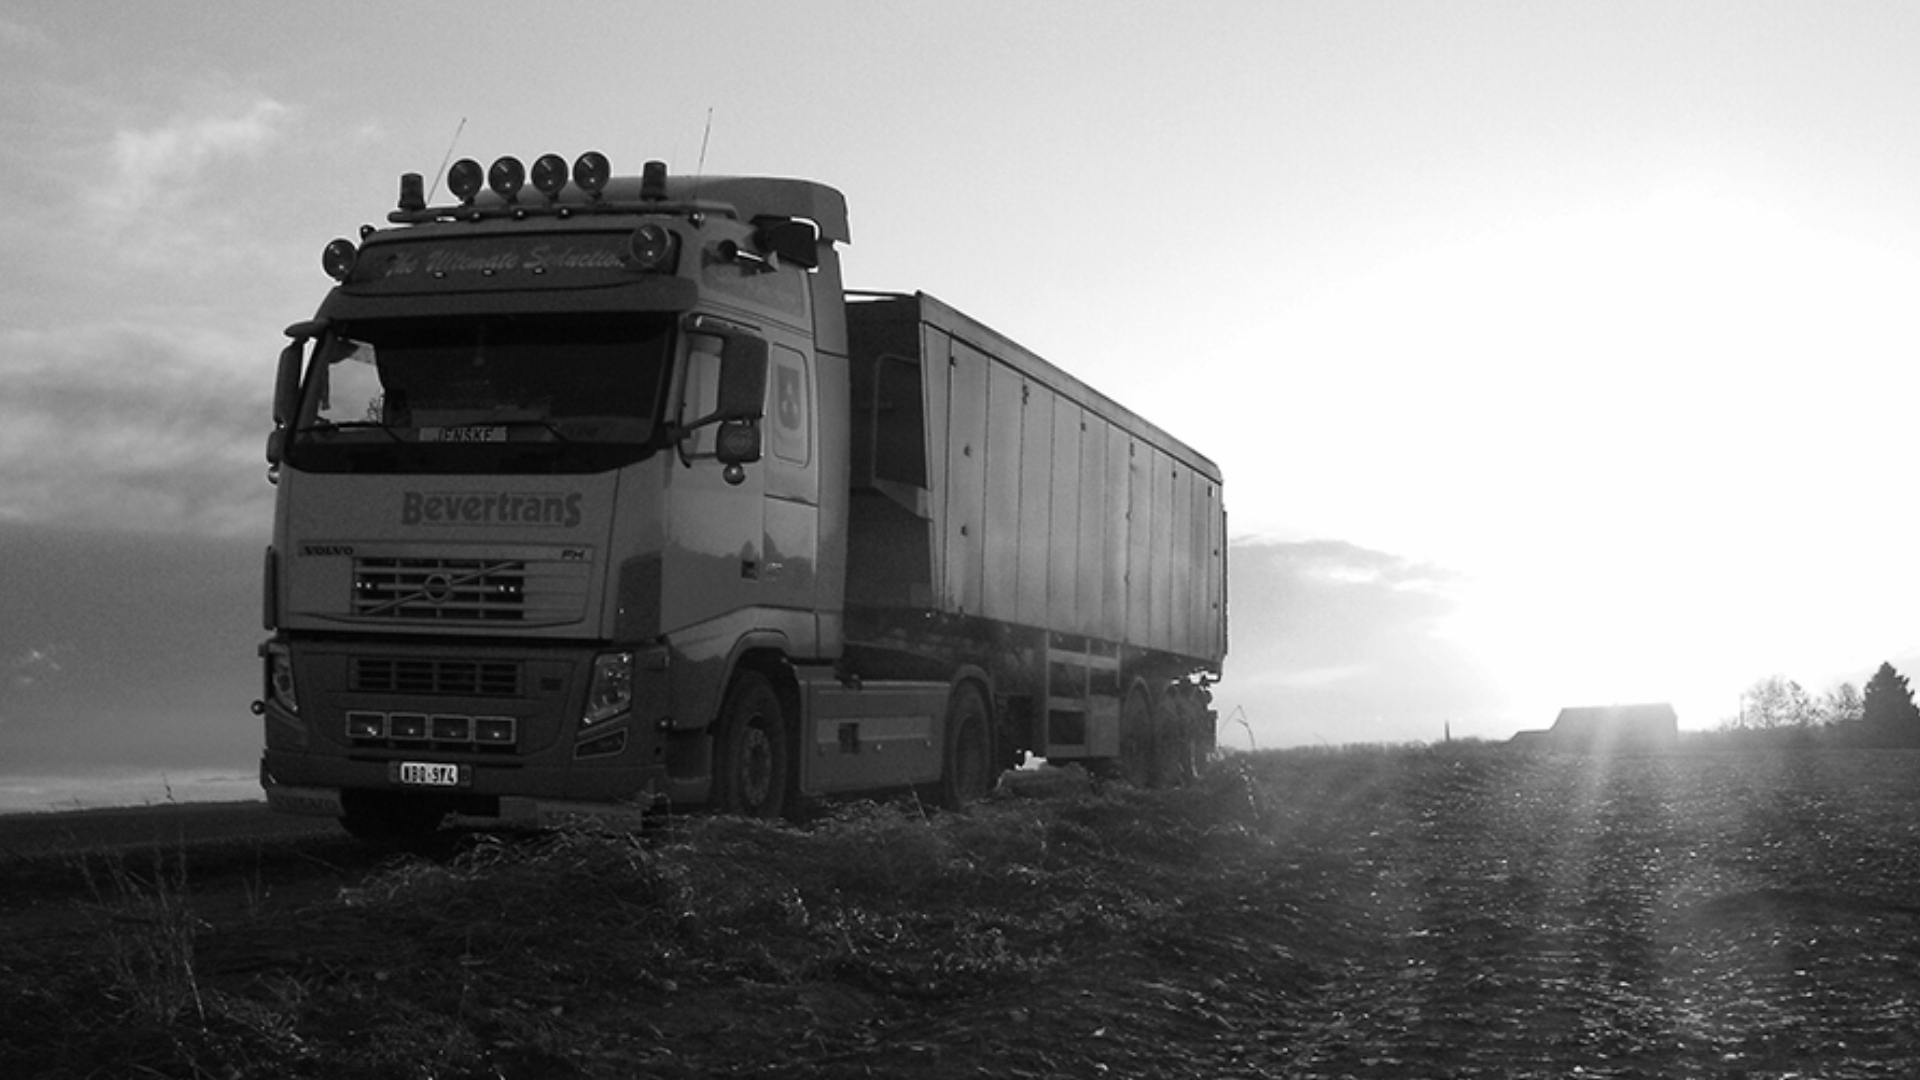 Bevertrans trucks